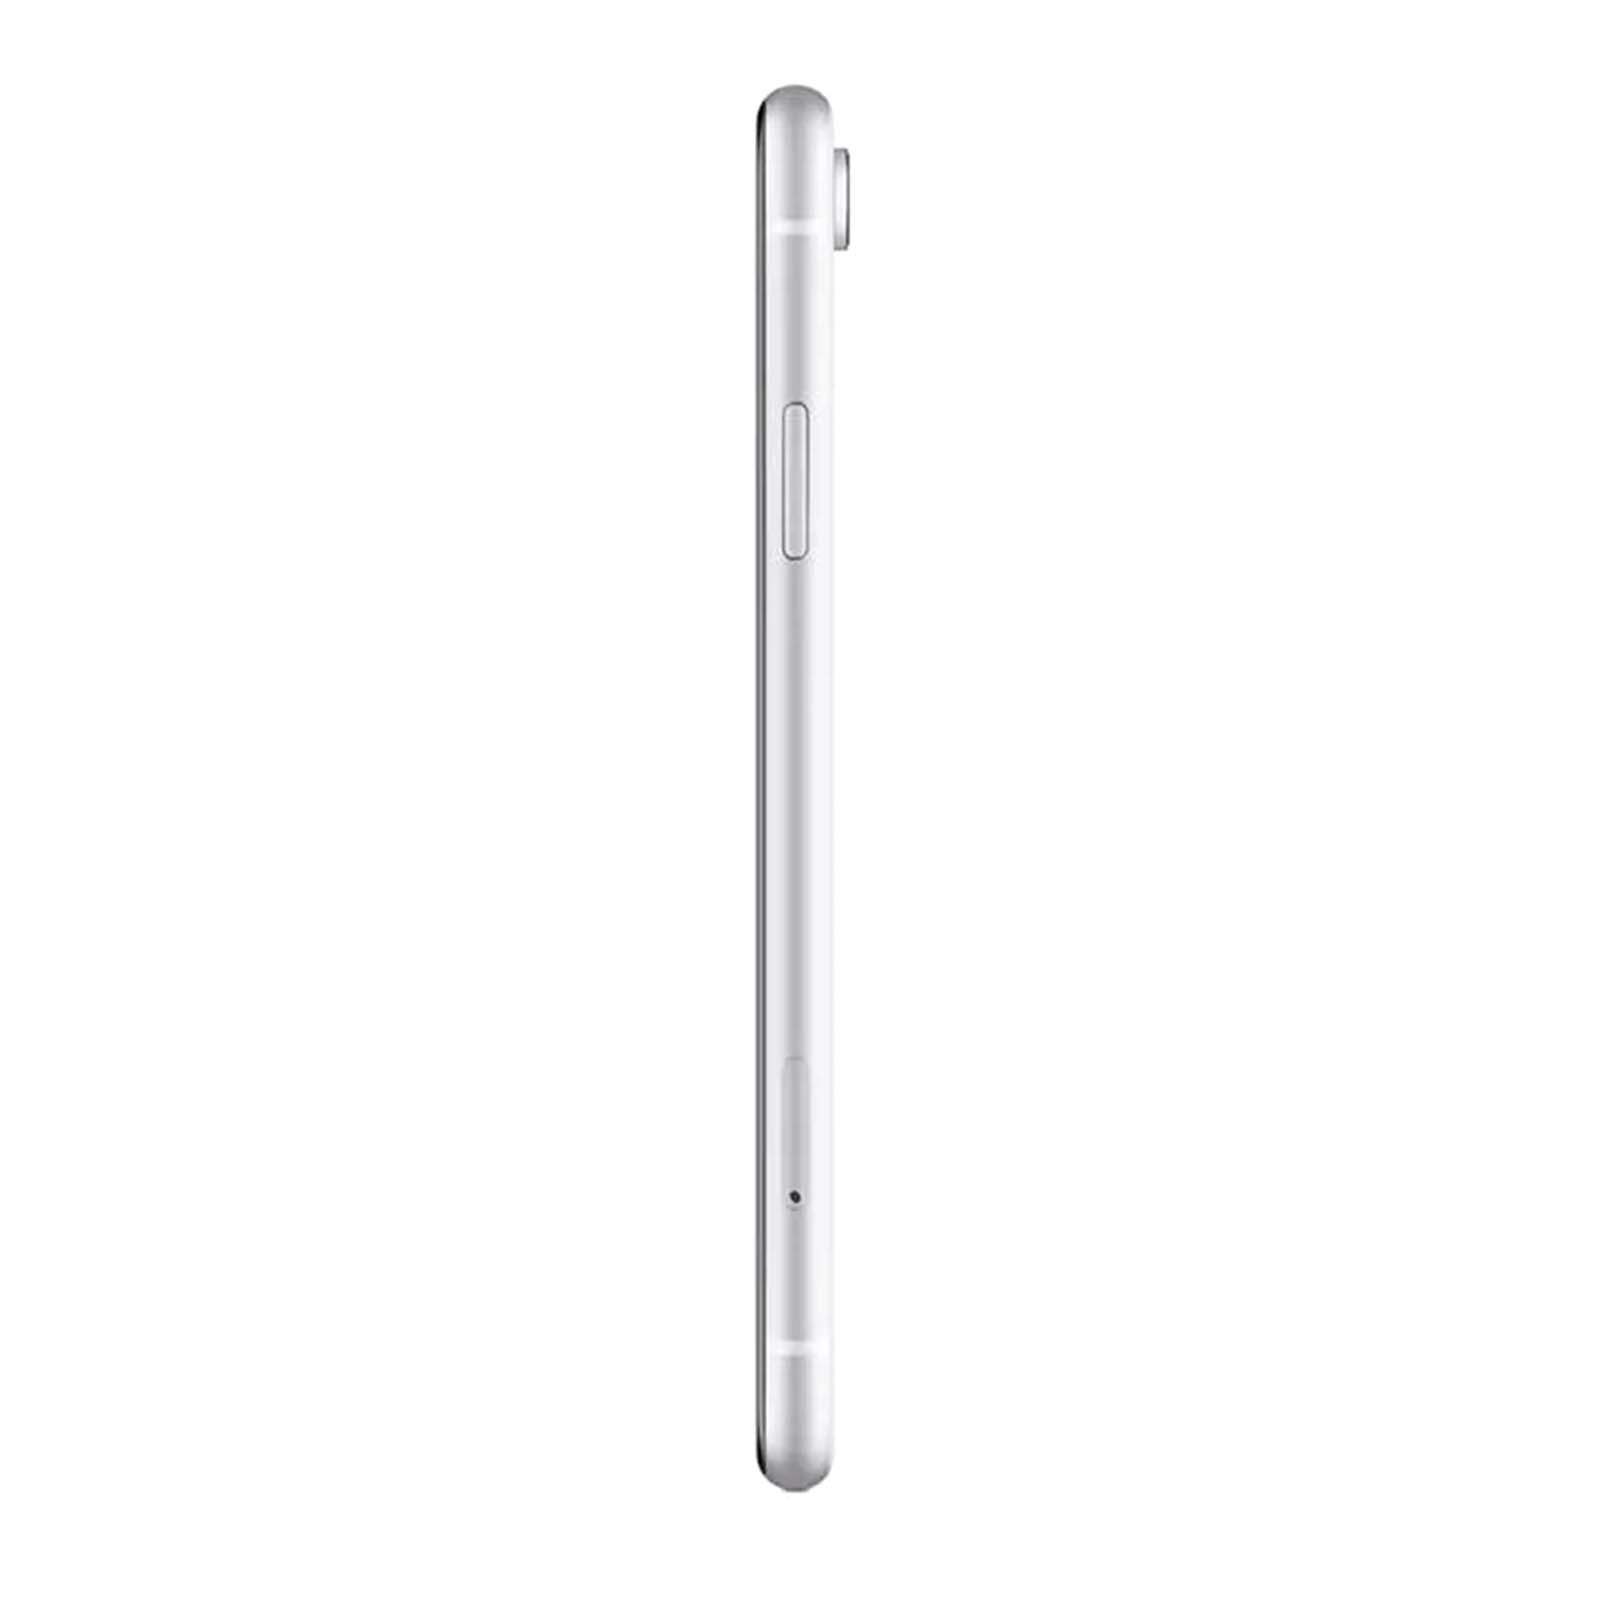 iPhone XR 64GB White Unlocked – Loop Mobile